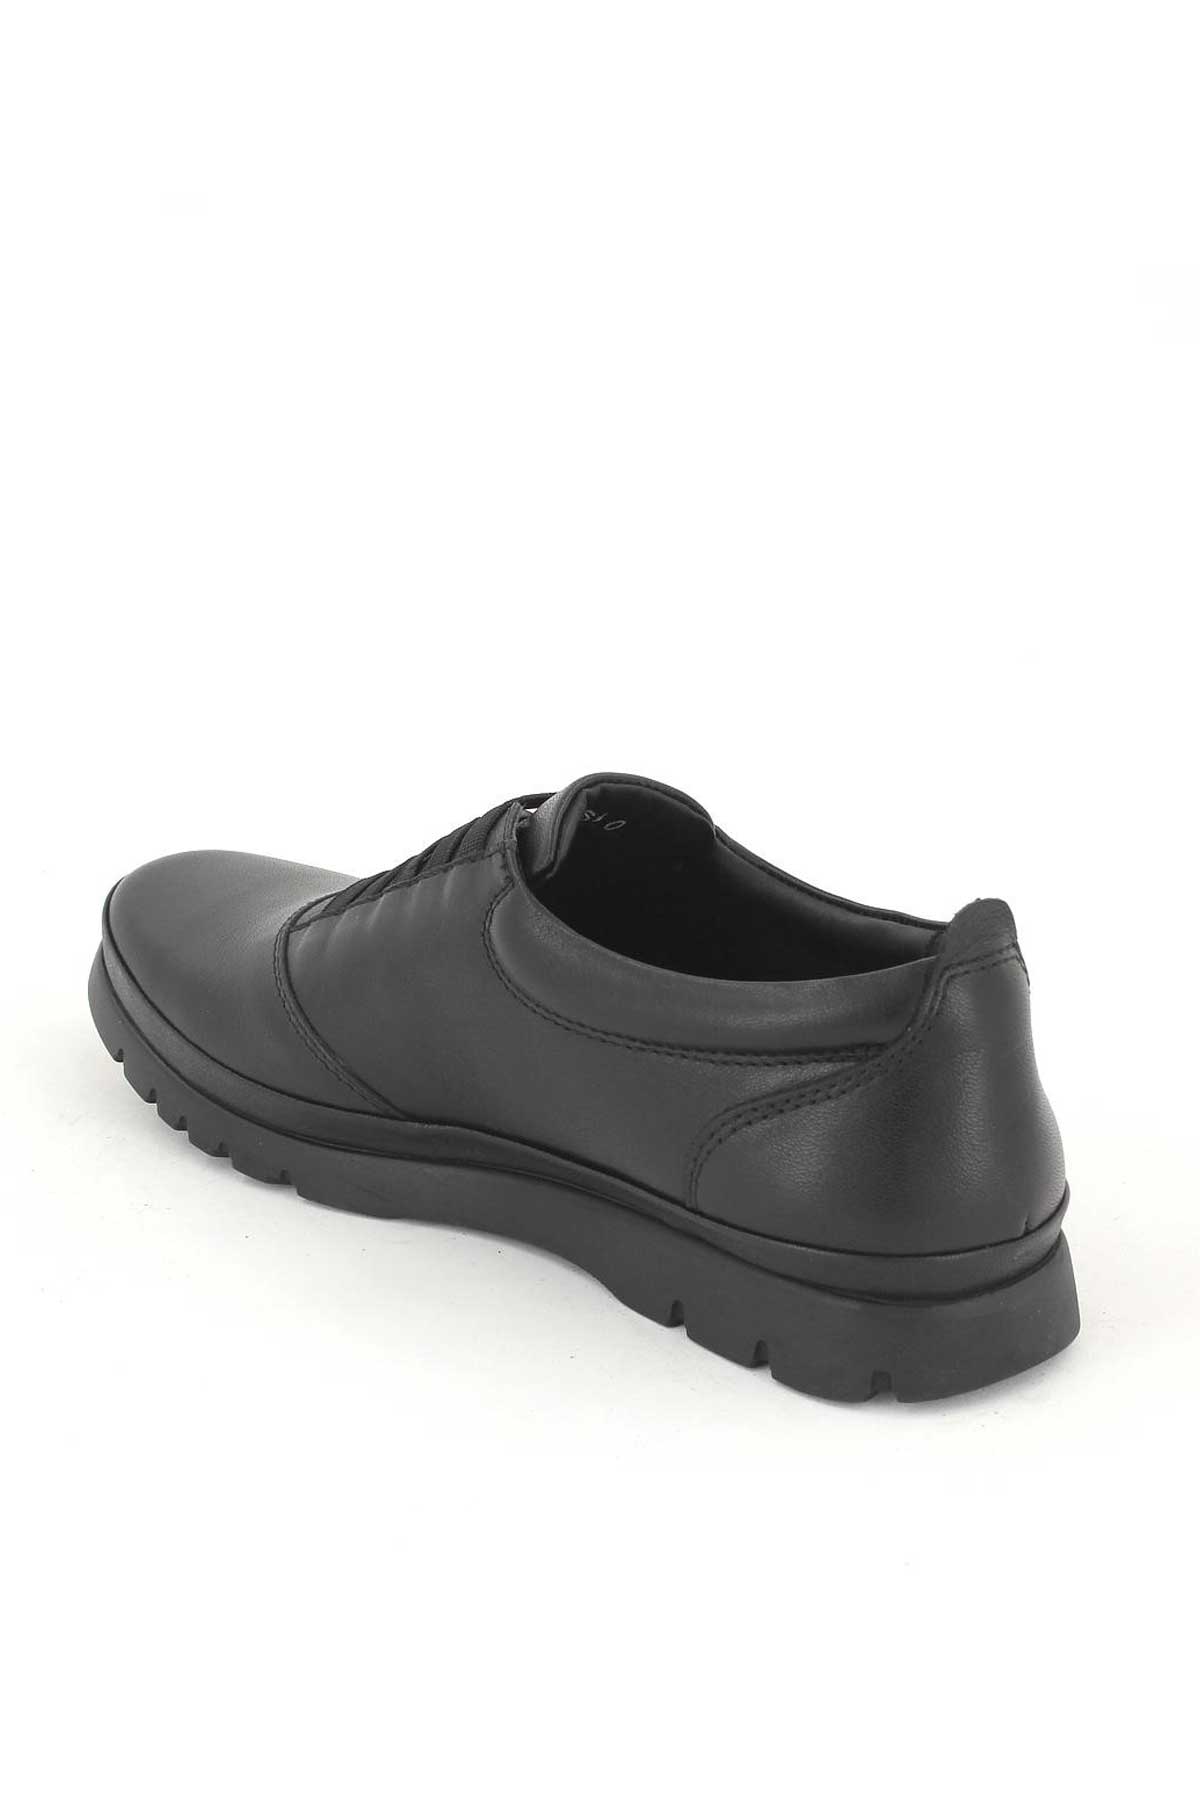 Kadın Comfort Ayakkabı Siyah 1813650K